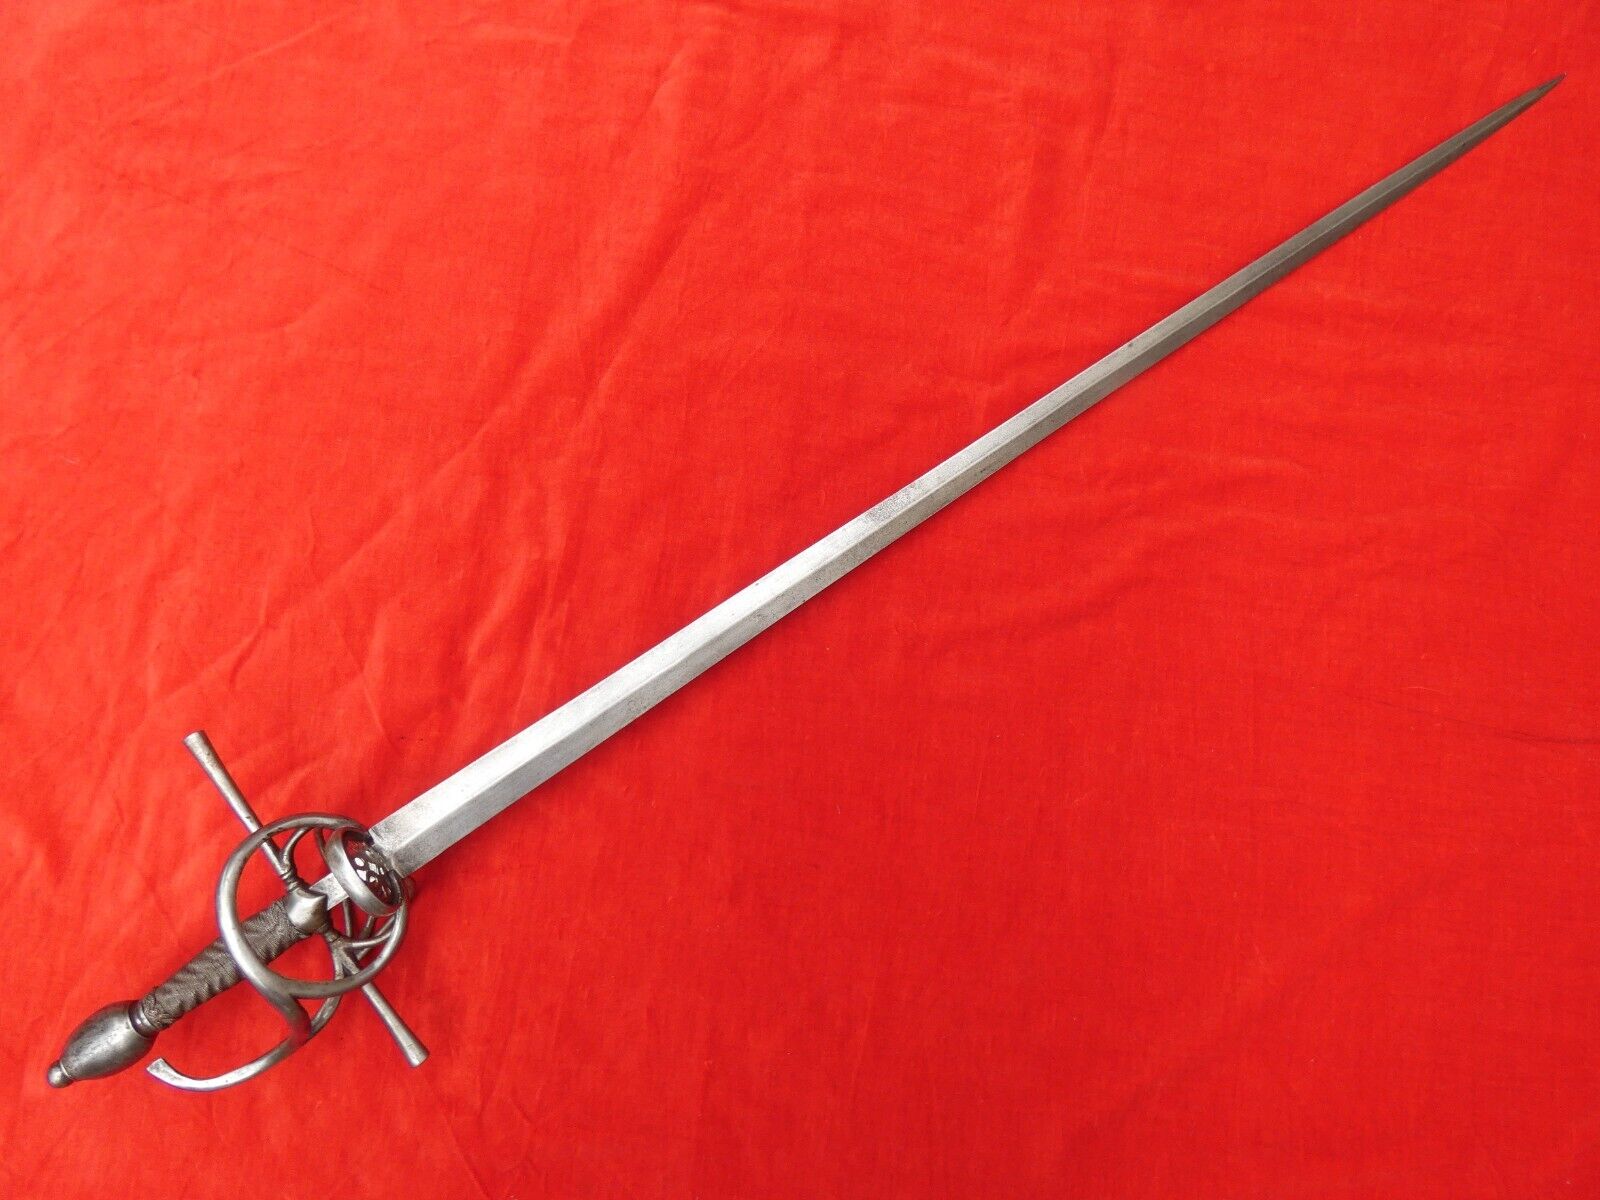 Superb ANTIQUE 16 / 17th CENTURY EUROPEAN RAPIER SWORD German or Italian dagger